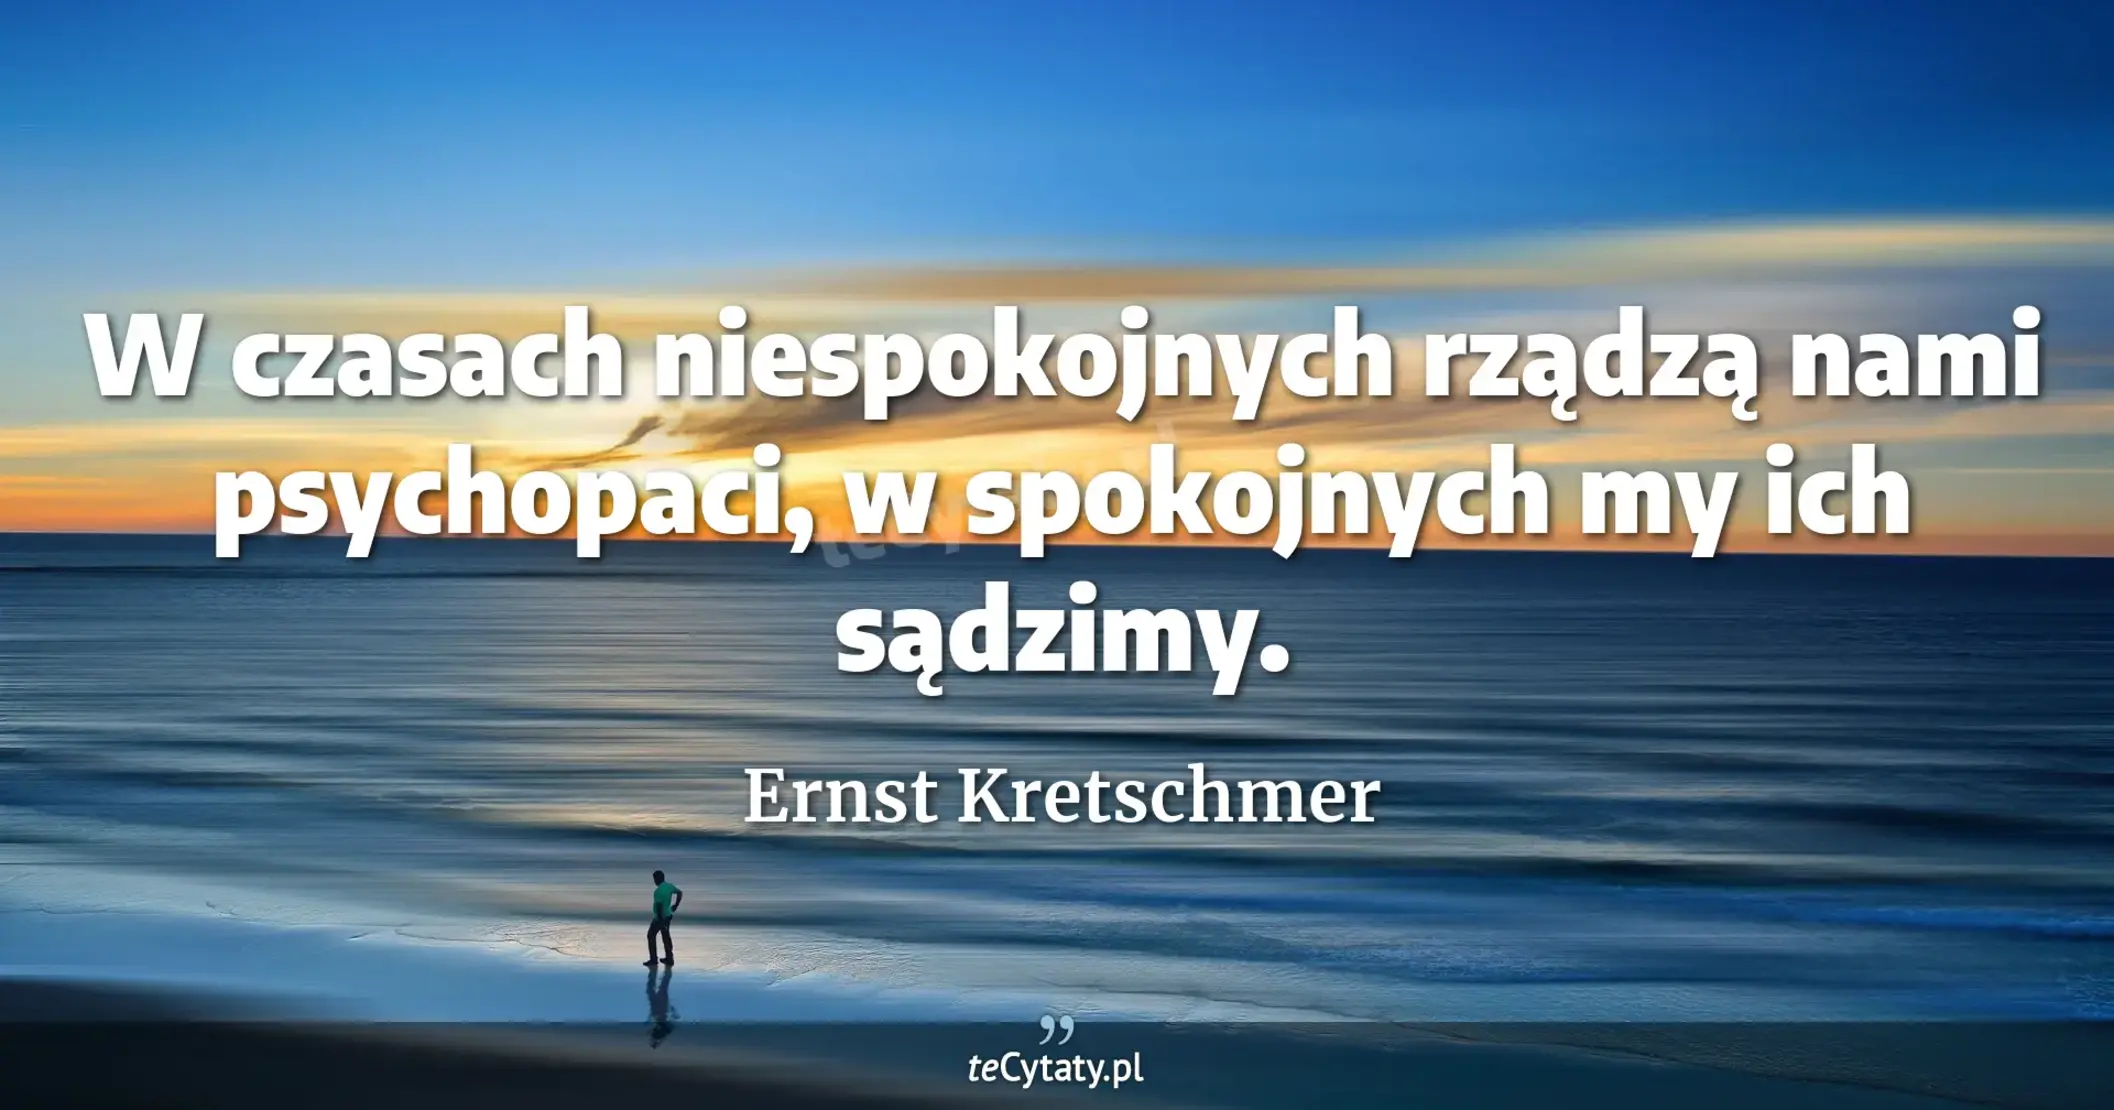 W czasach niespokojnych rządzą nami psychopaci, w spokojnych my ich sądzimy. - Ernst Kretschmer